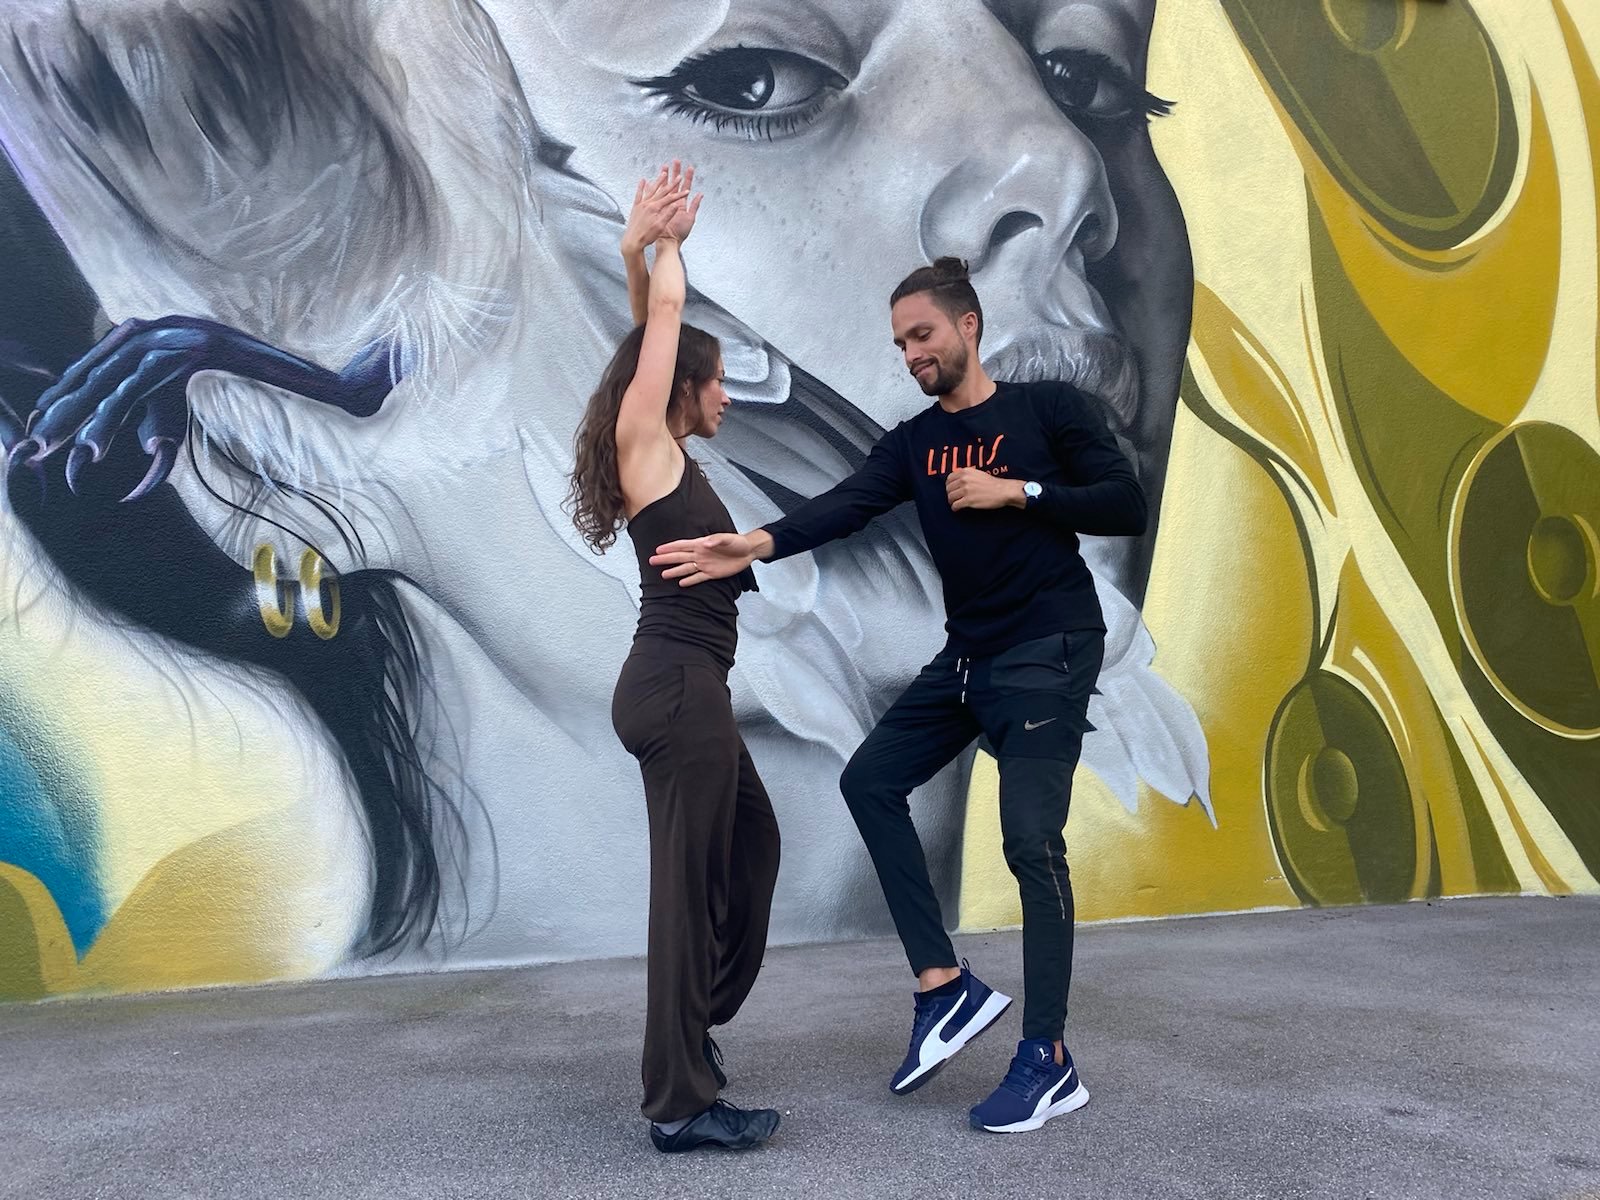 Tanztrainer Yuri tanzt mit Nadine Salsa vor einer Graffitiwand.